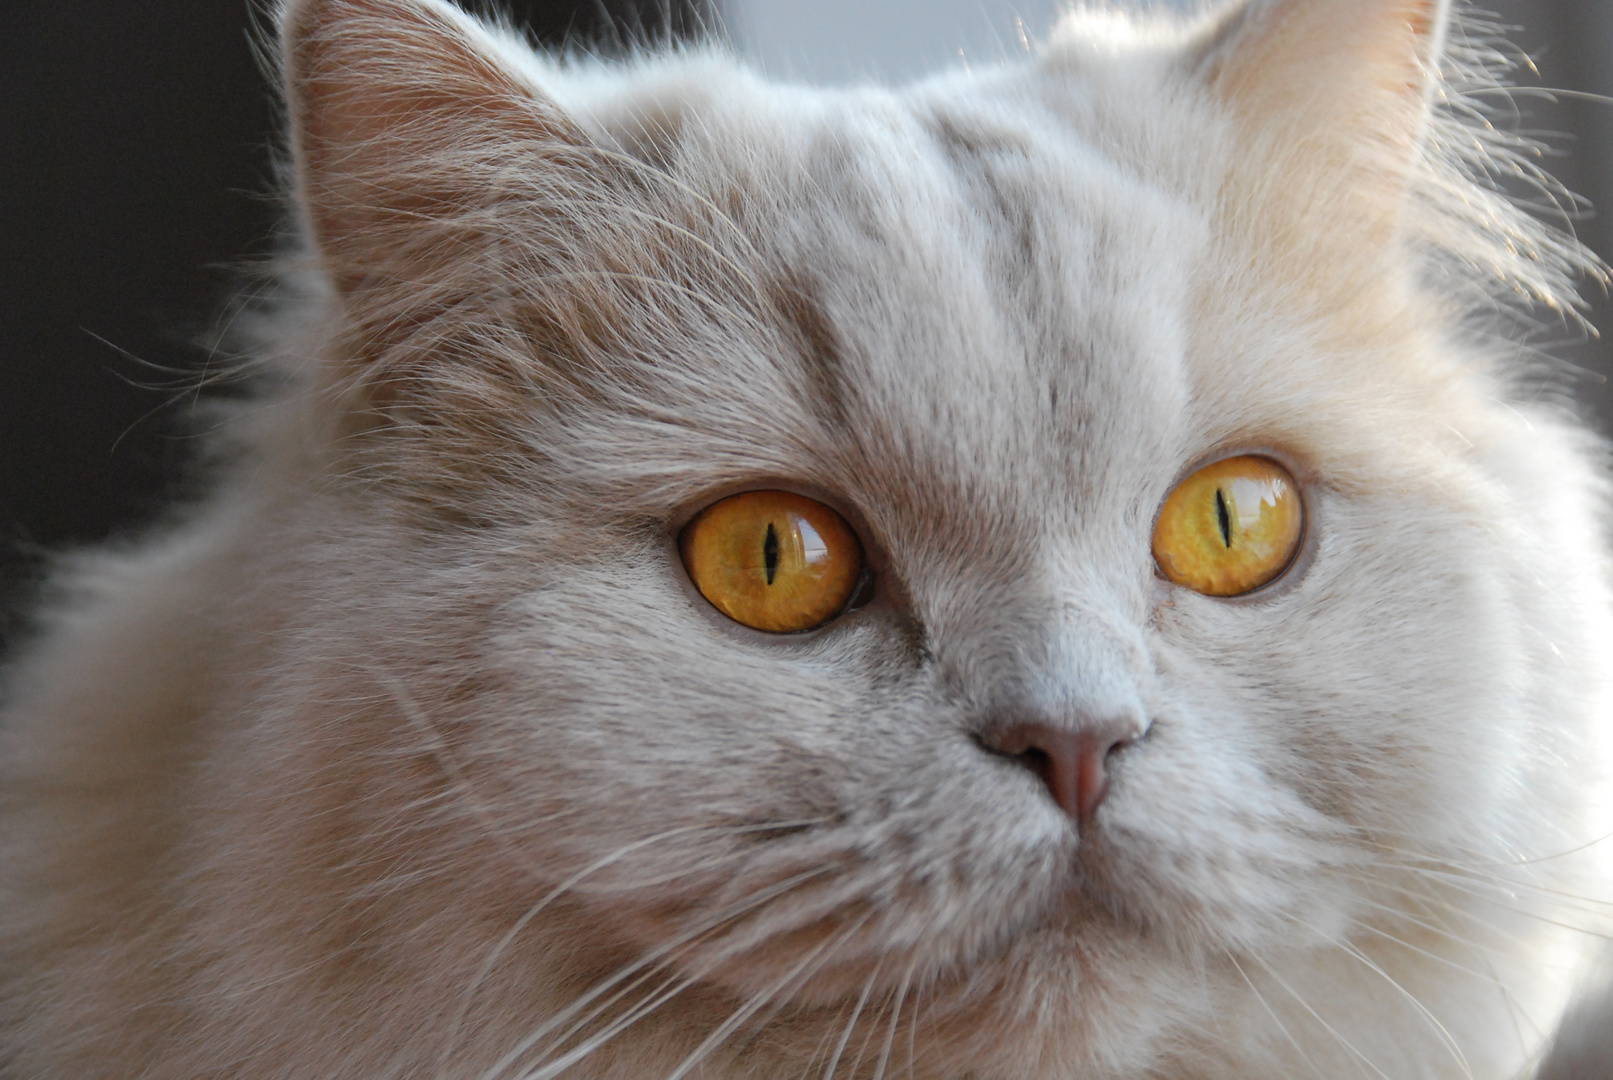 World Champion Venice von Grigoleit; BLH (Highlander) Katze Farbe fawn